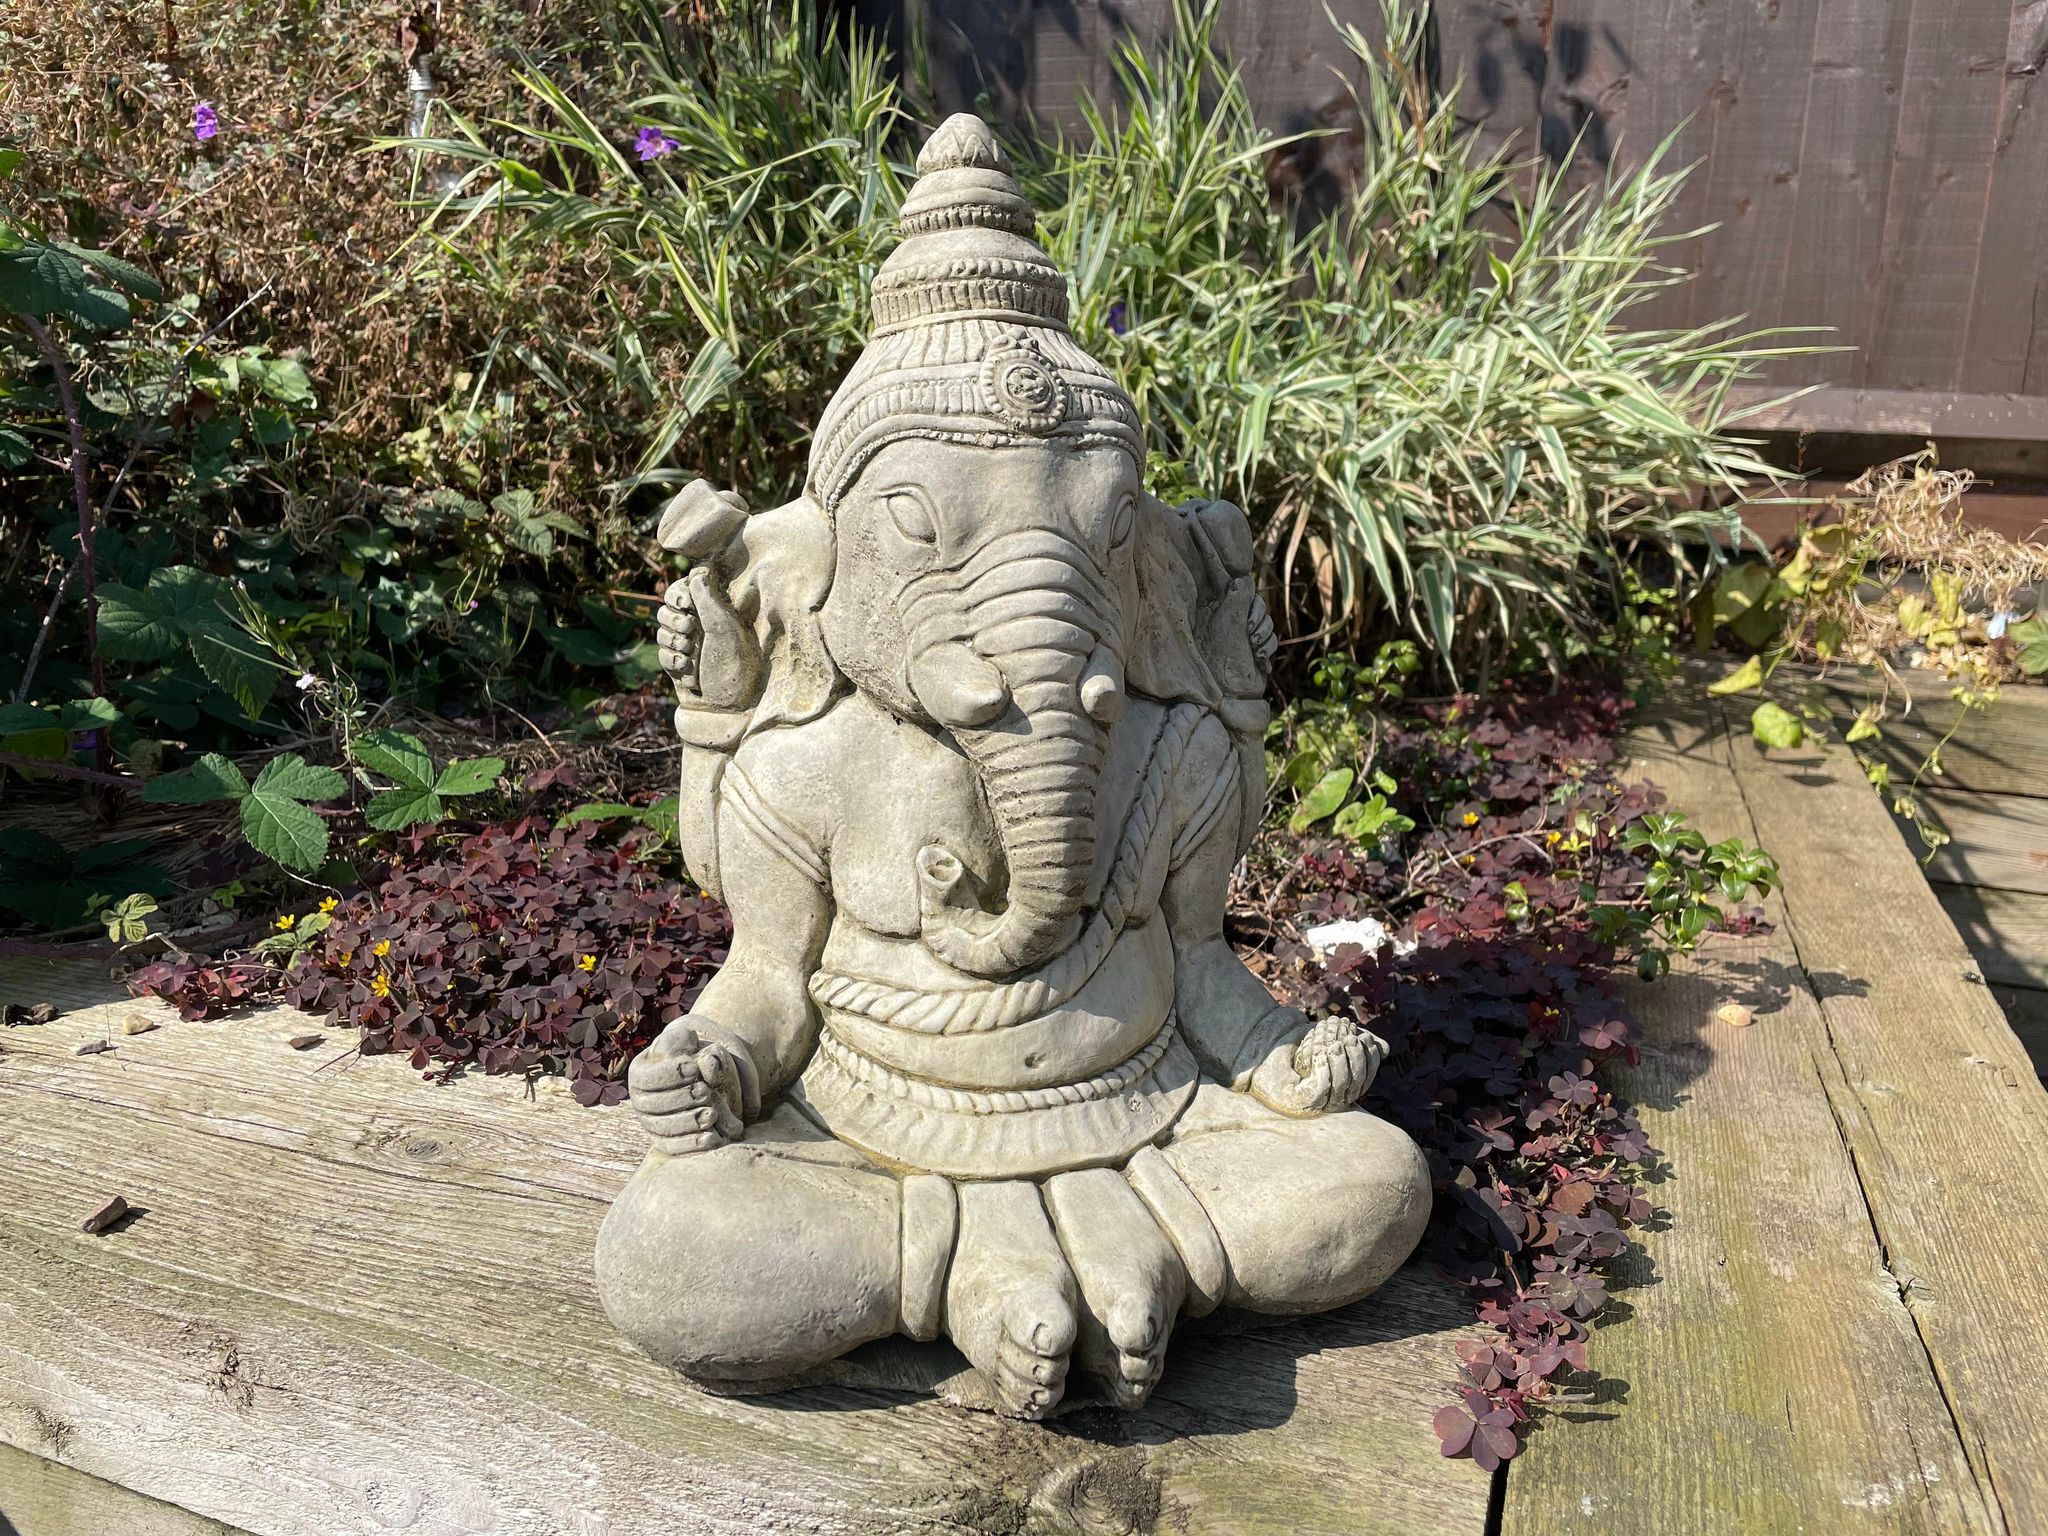 Praying Ganesh Statue